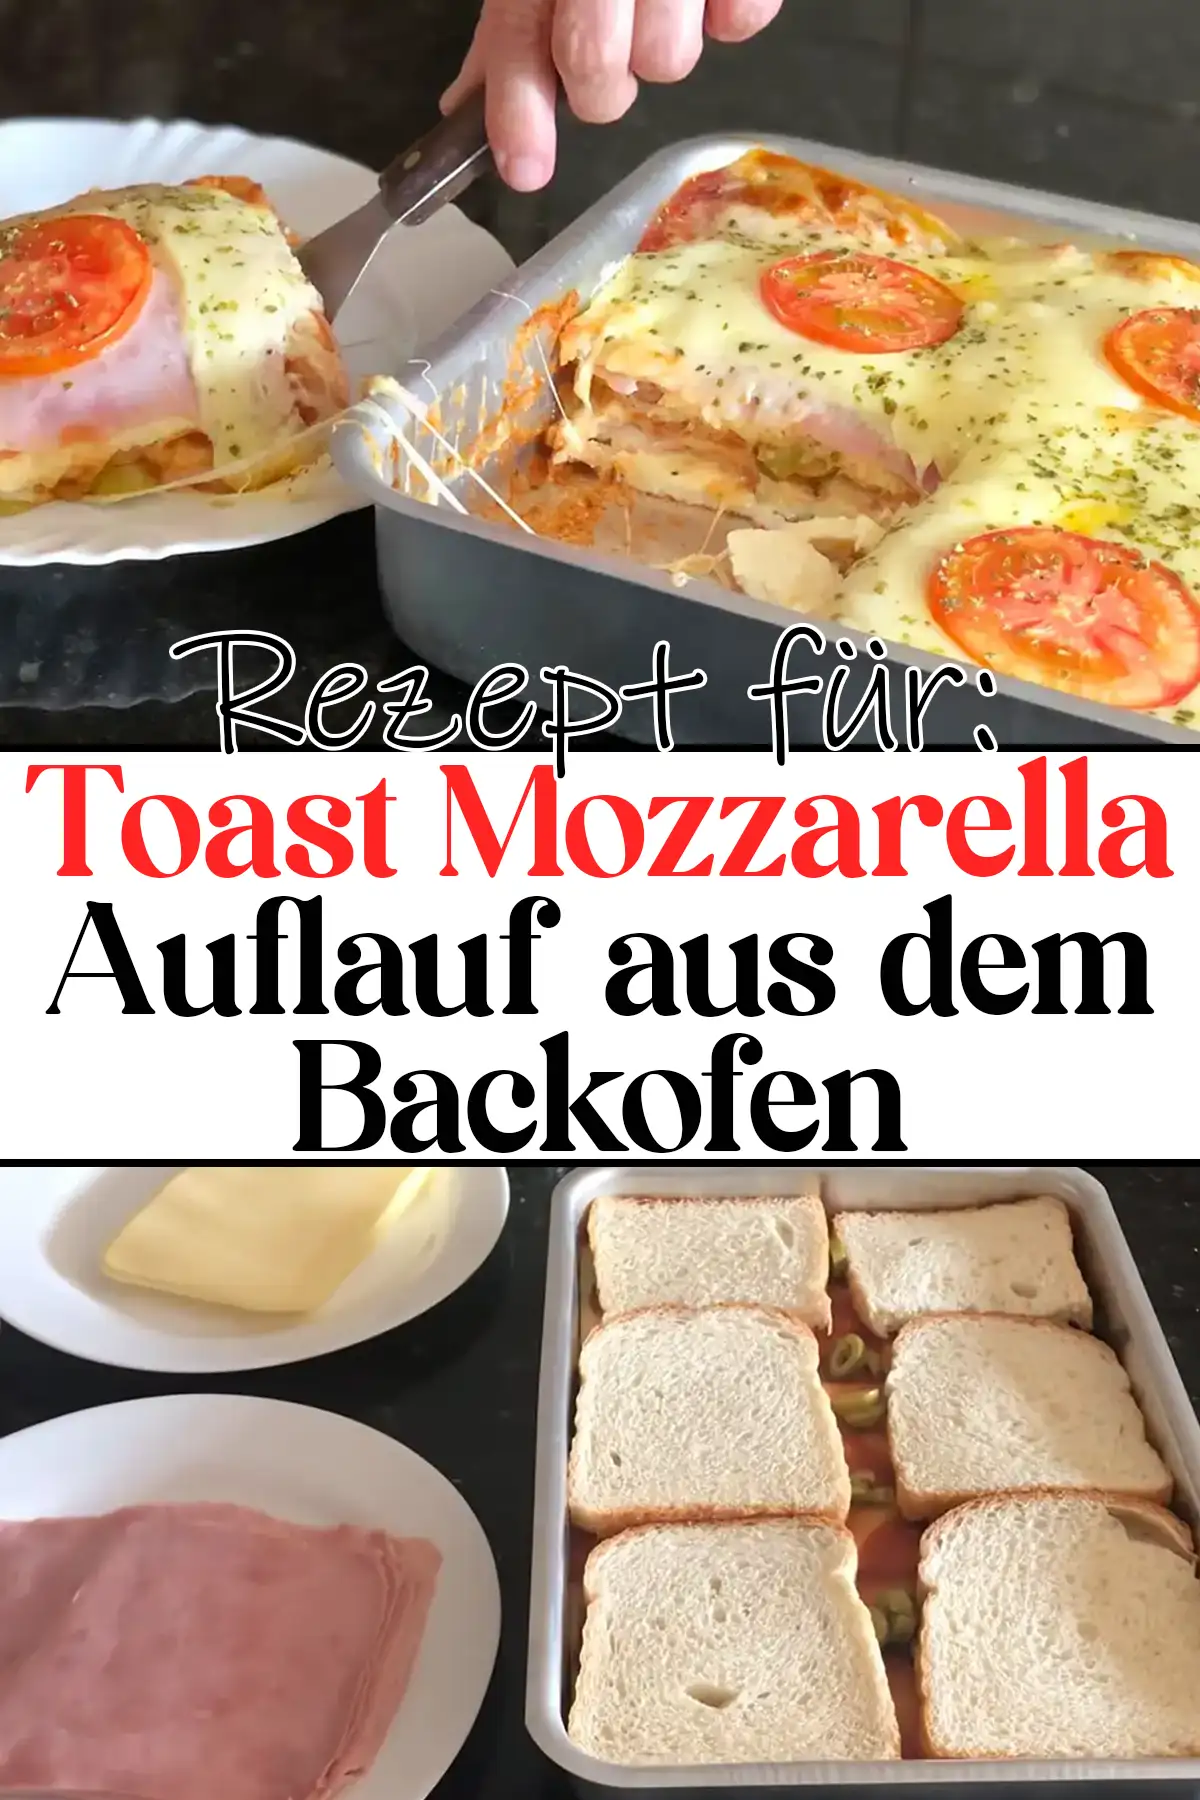 Toast Mozzarella Auflauf aus dem Backofen